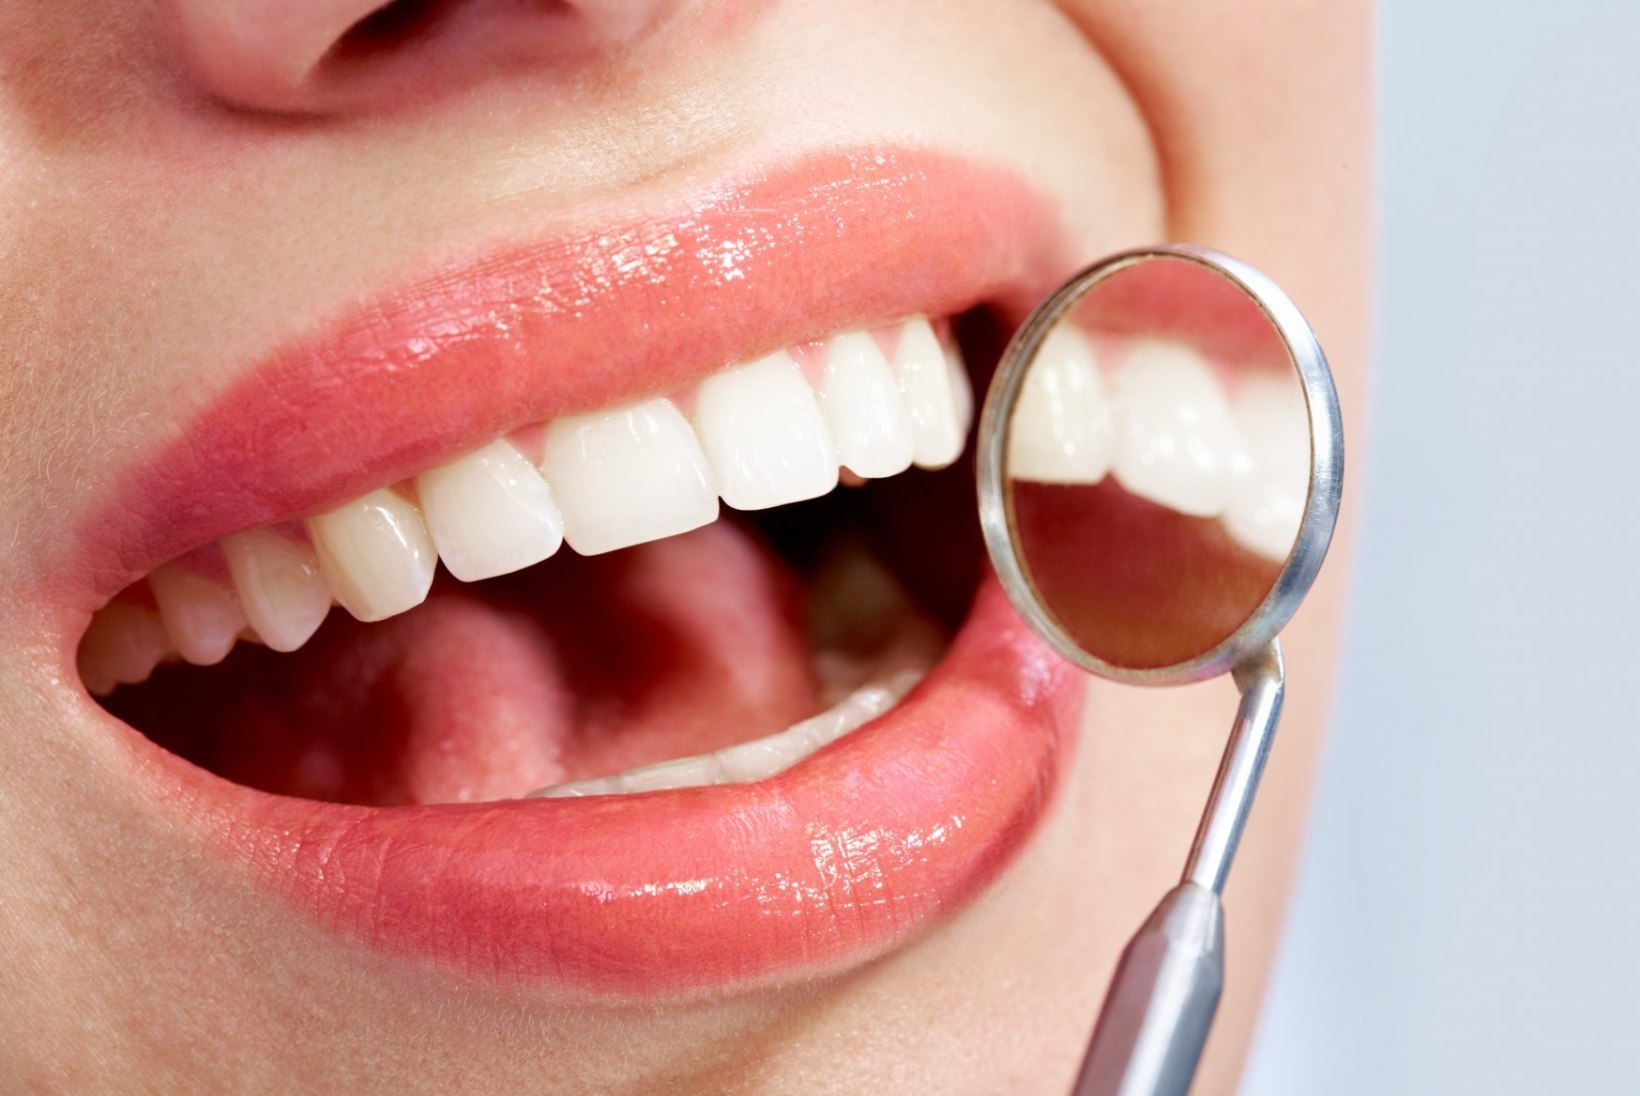 Kuidas saab hambaid valgemaks muuta?